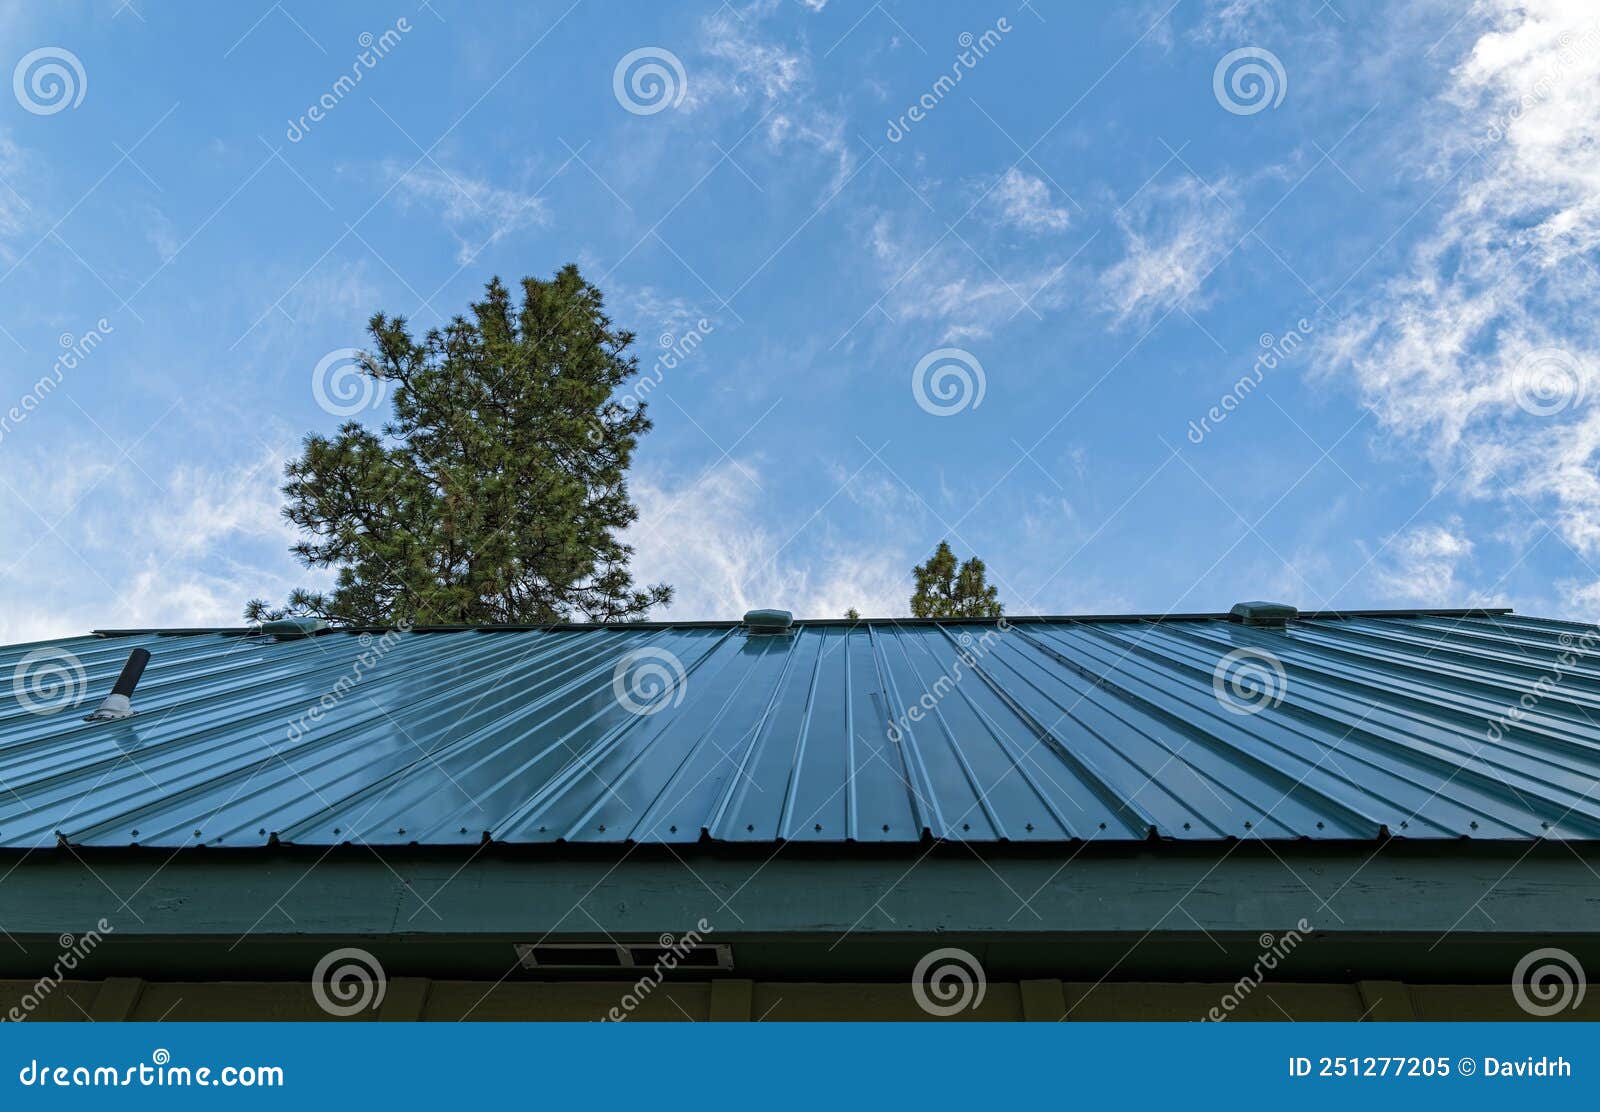 an upward view of a standing seam metal roof